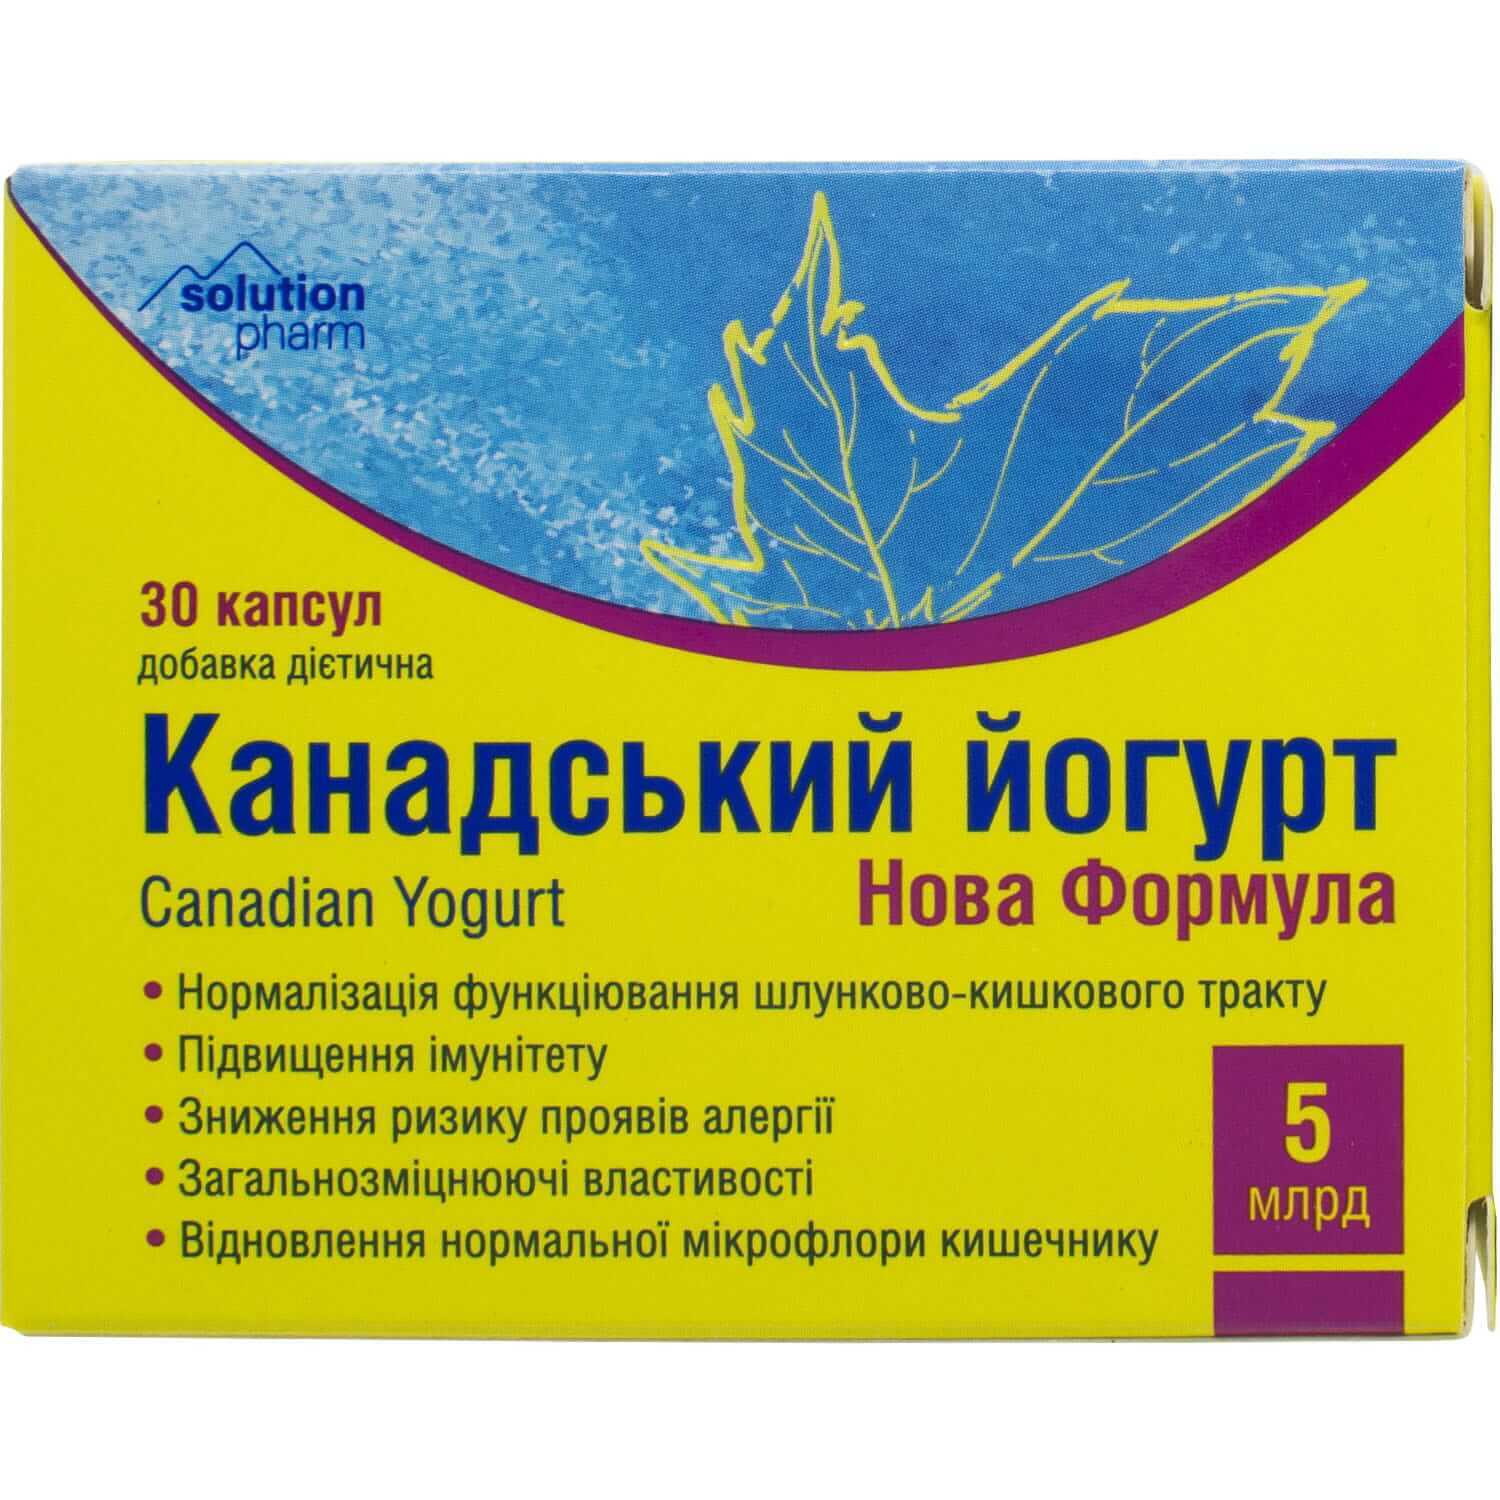 

Йогурт канадський Нова формула капс. 5 млрд №30, капс. 5 млрд